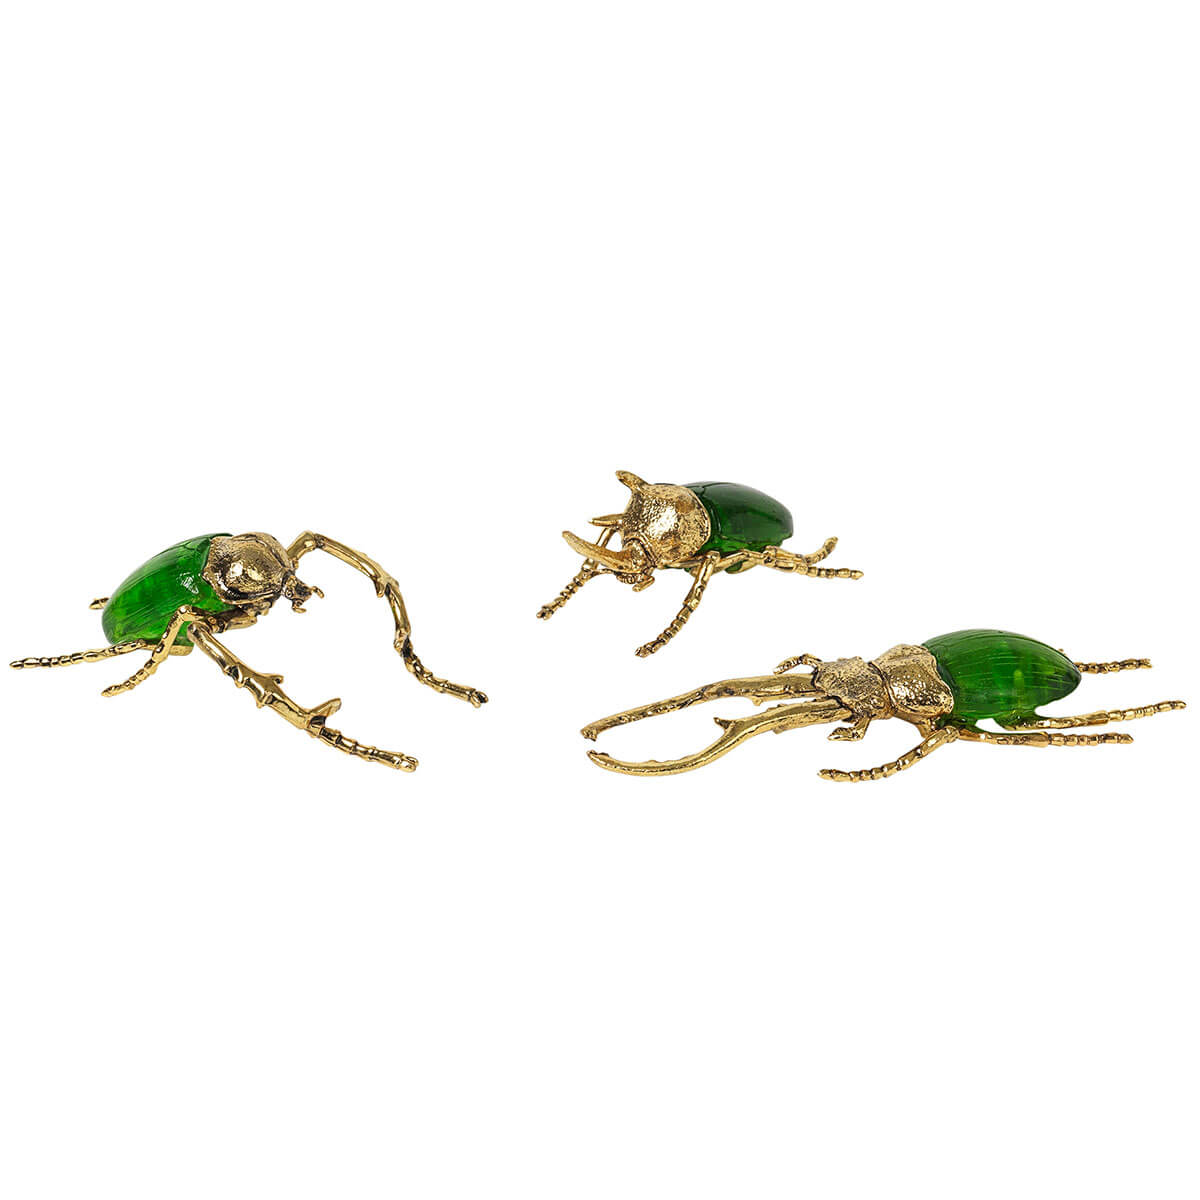 Metall Deko Insekten in grün/gold von Broste